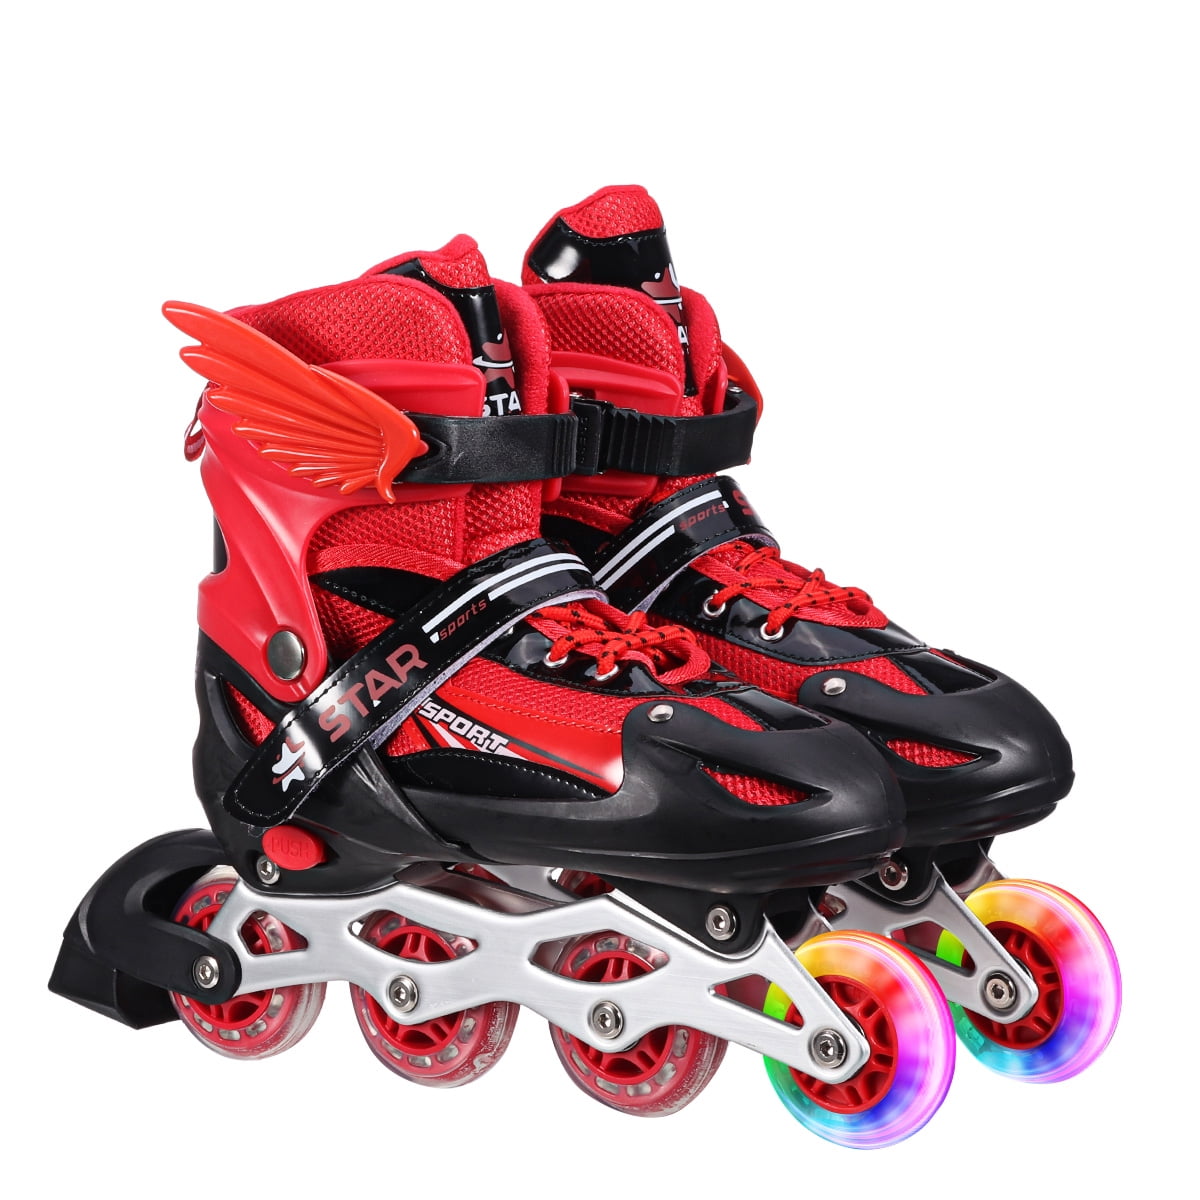 Kids Kids Flash Heel Skates Hot Wheels Adjustable Strap Flash Skating Shoes Easy-on Roller Skates for Boy Girl 